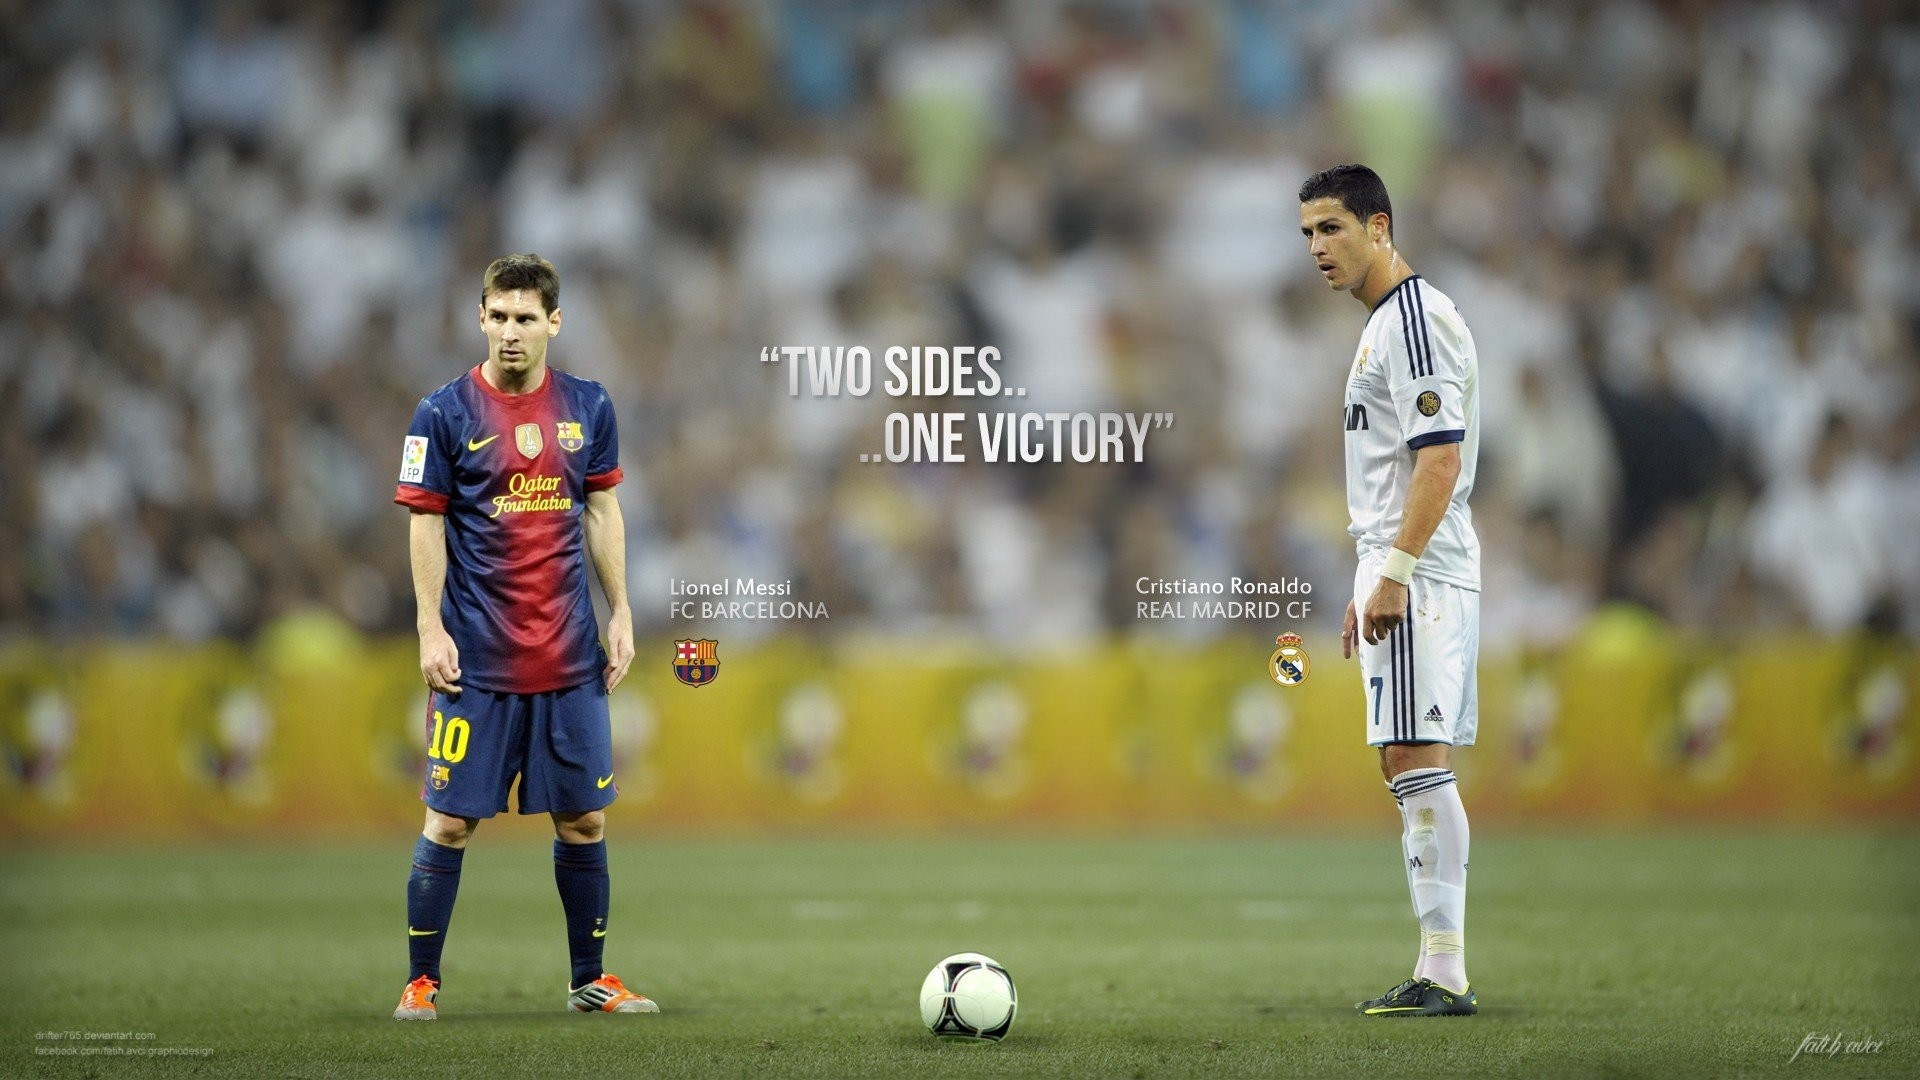 1920x1080 Lionel Messi VS Cristiano Ronaldo Wallpaper HD